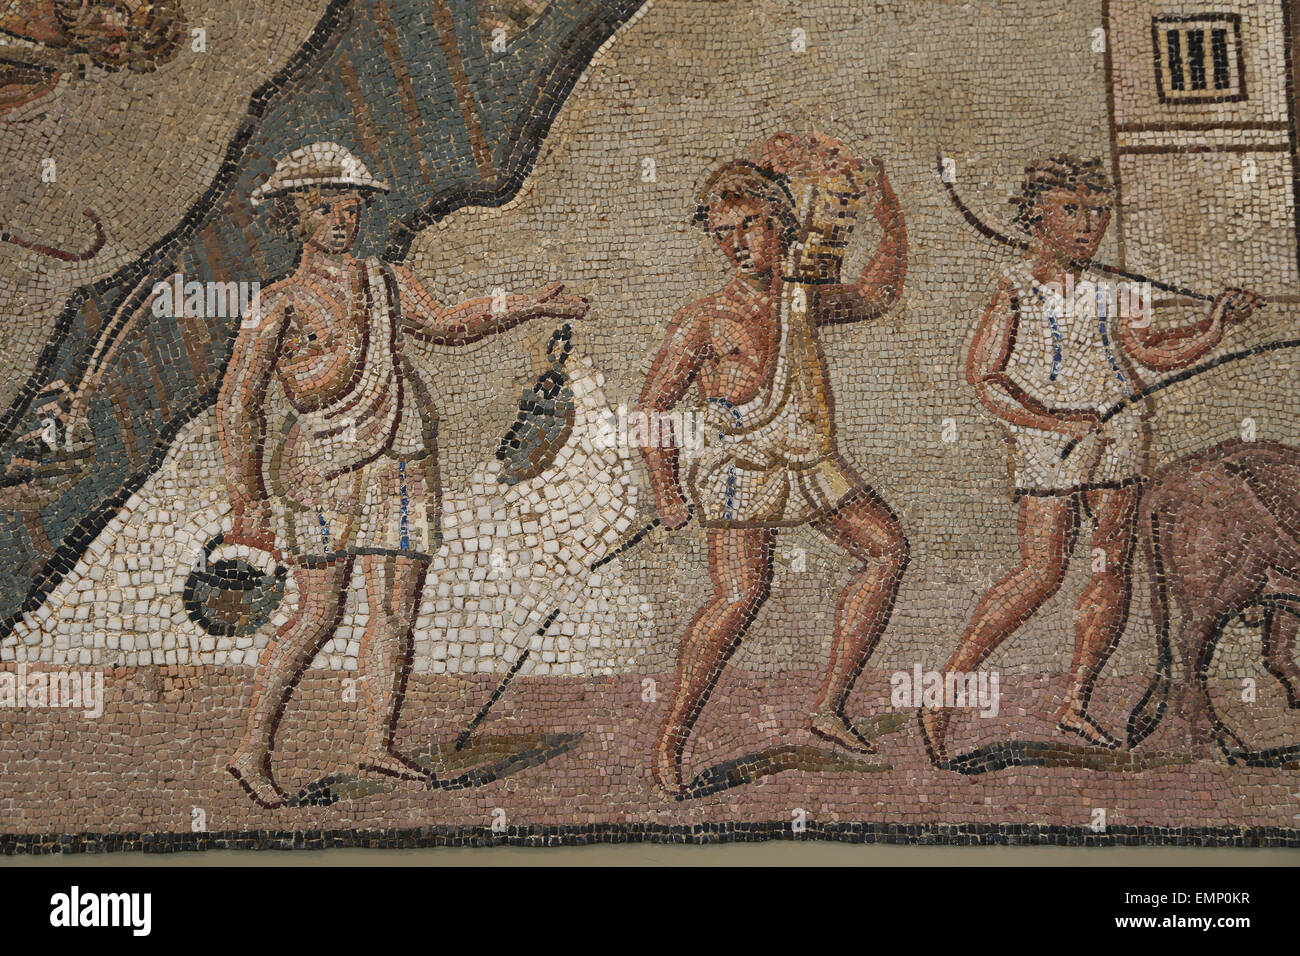 Mosaico romano con escenas rurales y marinas. Imperial tardía, finales de 2ª-3ª C. AD. Detalle. Workmans con túnicas cortas. Foto de stock